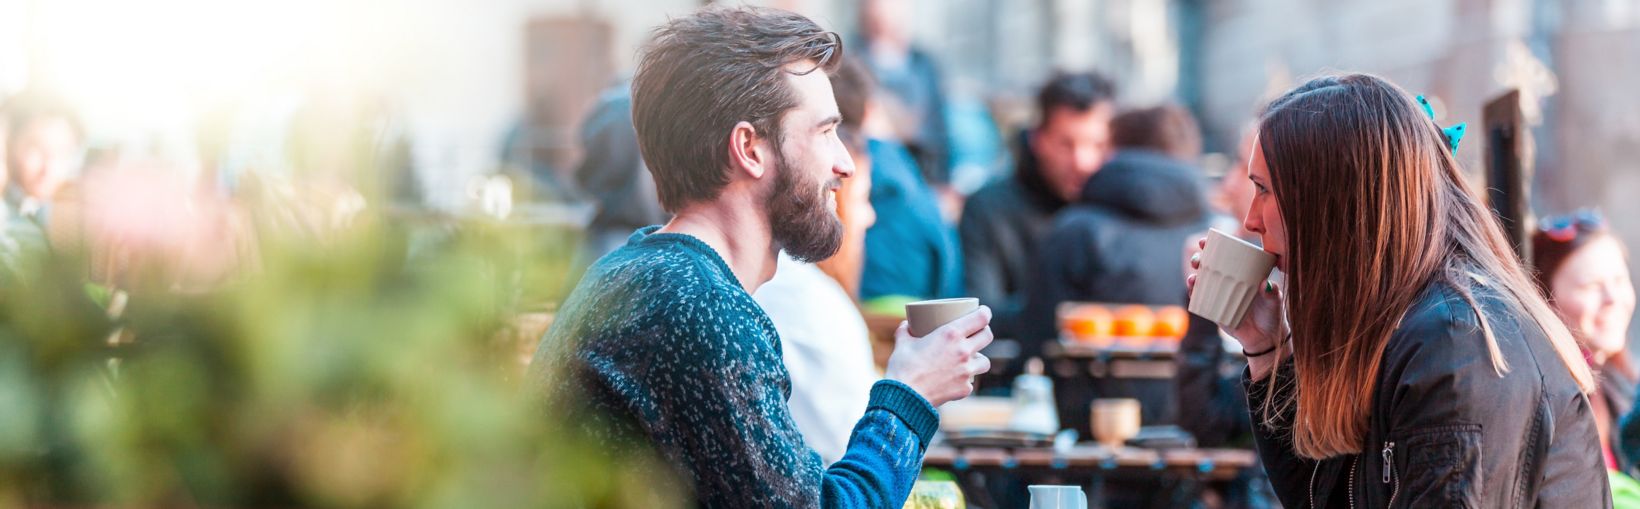 Jeune femme adulte aux longs cheveux bruns et son ami masculin buvant un café à une table en terrasse par une journée lumineuse, mais fraîche